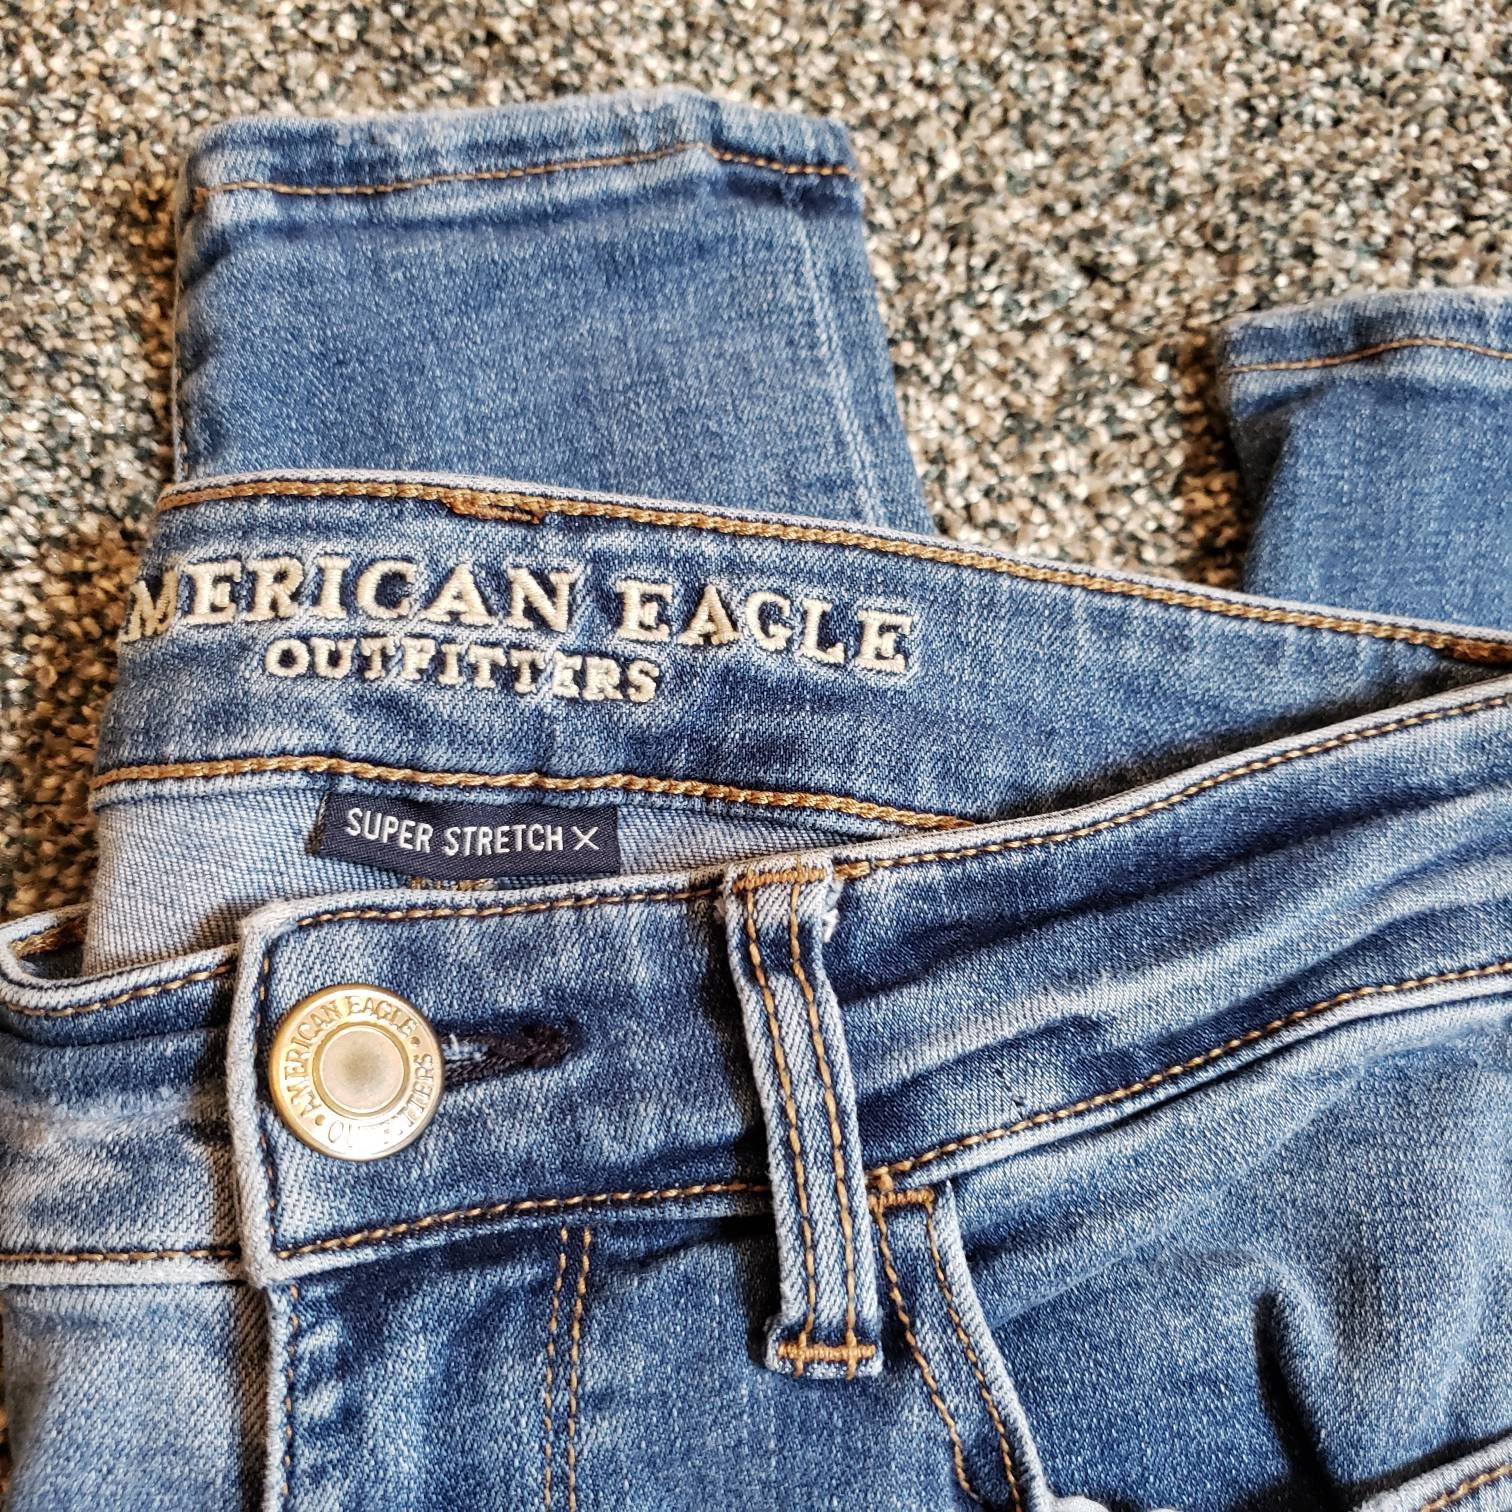 American Eagle, Jeans, American Eagle Jeans, Jeggins, Super